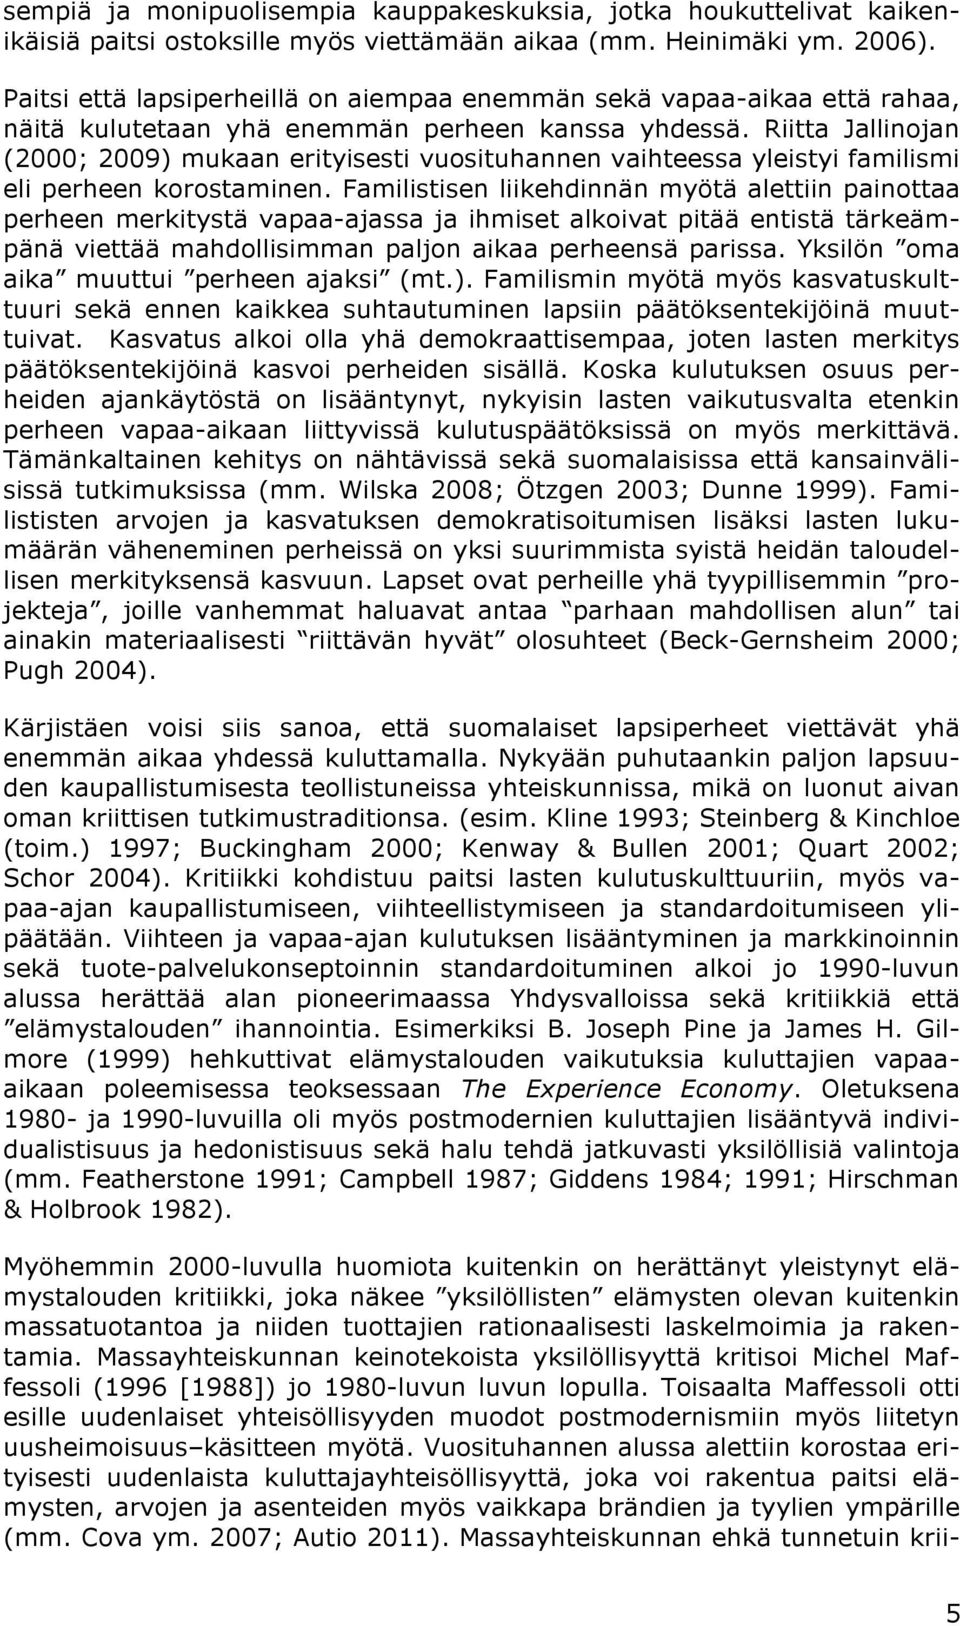 Riitta Jallinojan (2000; 2009) mukaan erityisesti vuosituhannen vaihteessa yleistyi familismi eli perheen korostaminen.